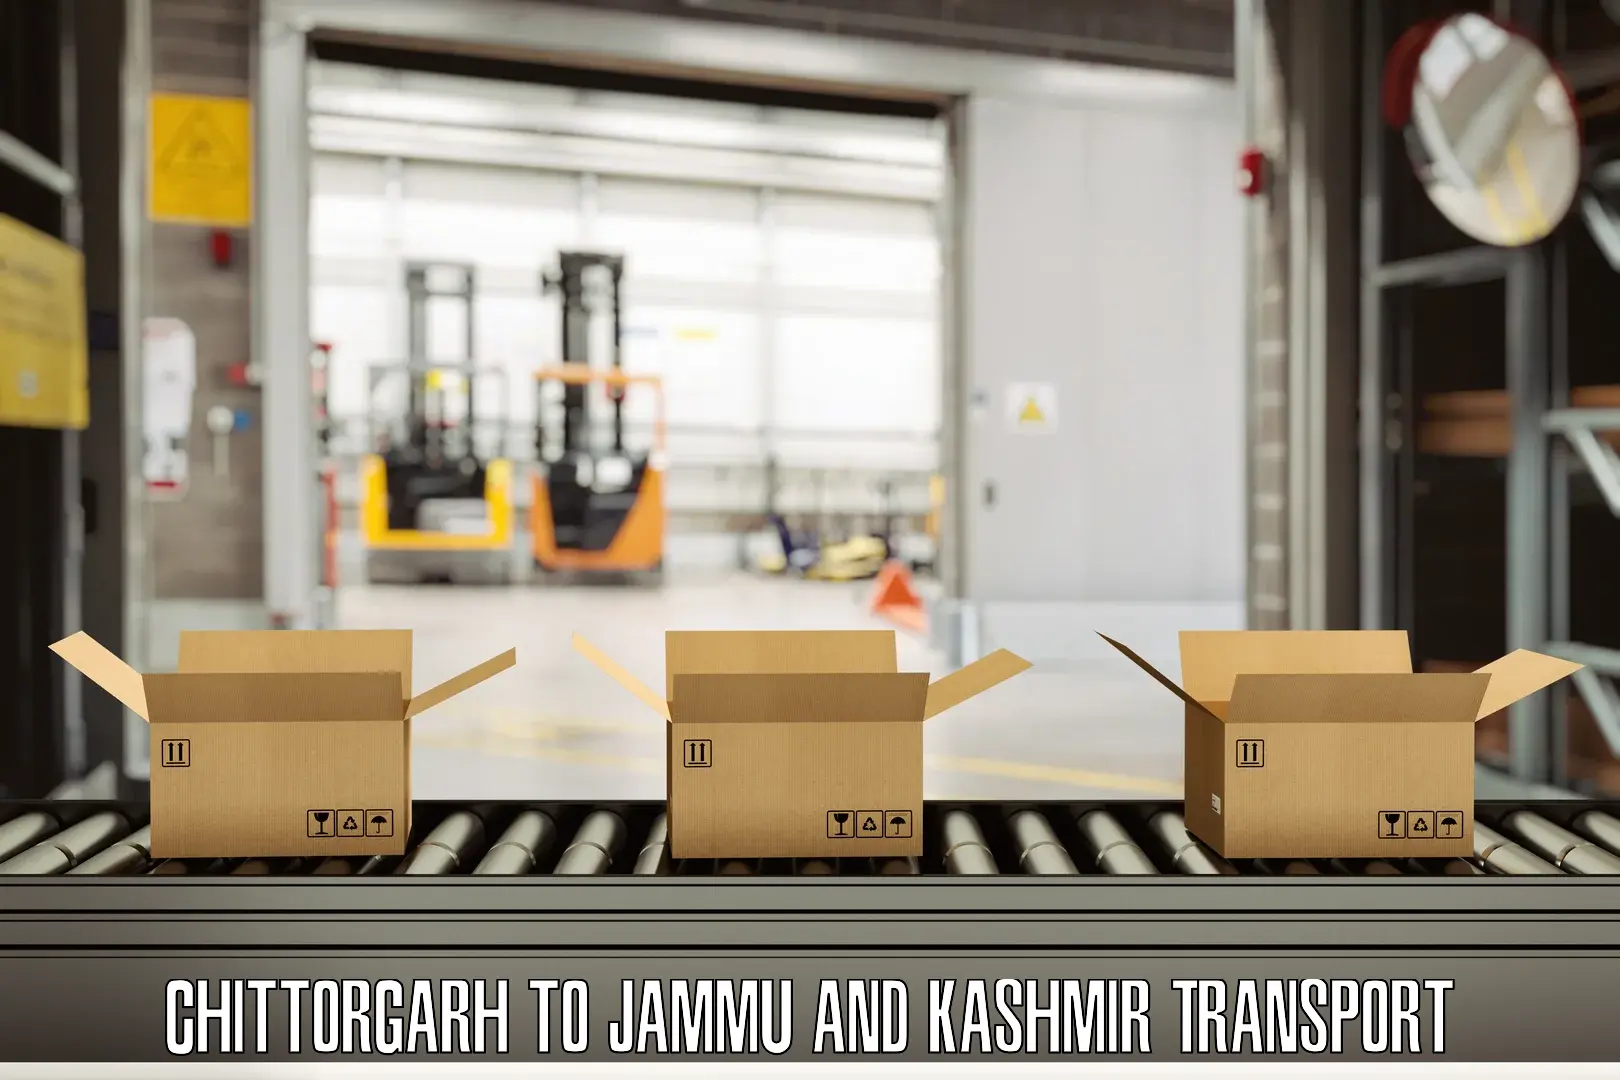 Online transport booking Chittorgarh to Srinagar Kashmir